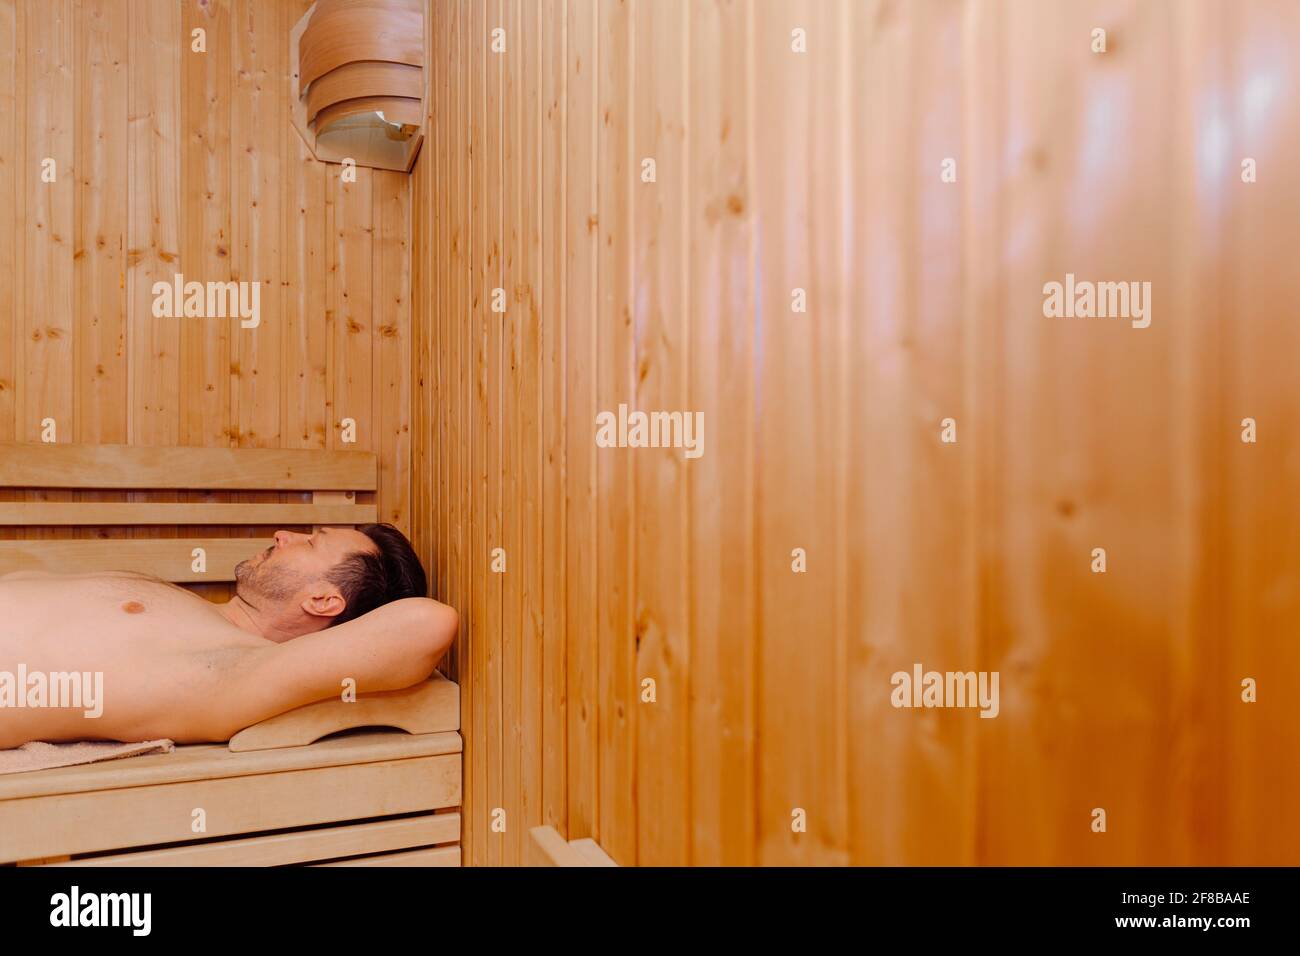 Sauna man hi-res stock photography and images - Alamy